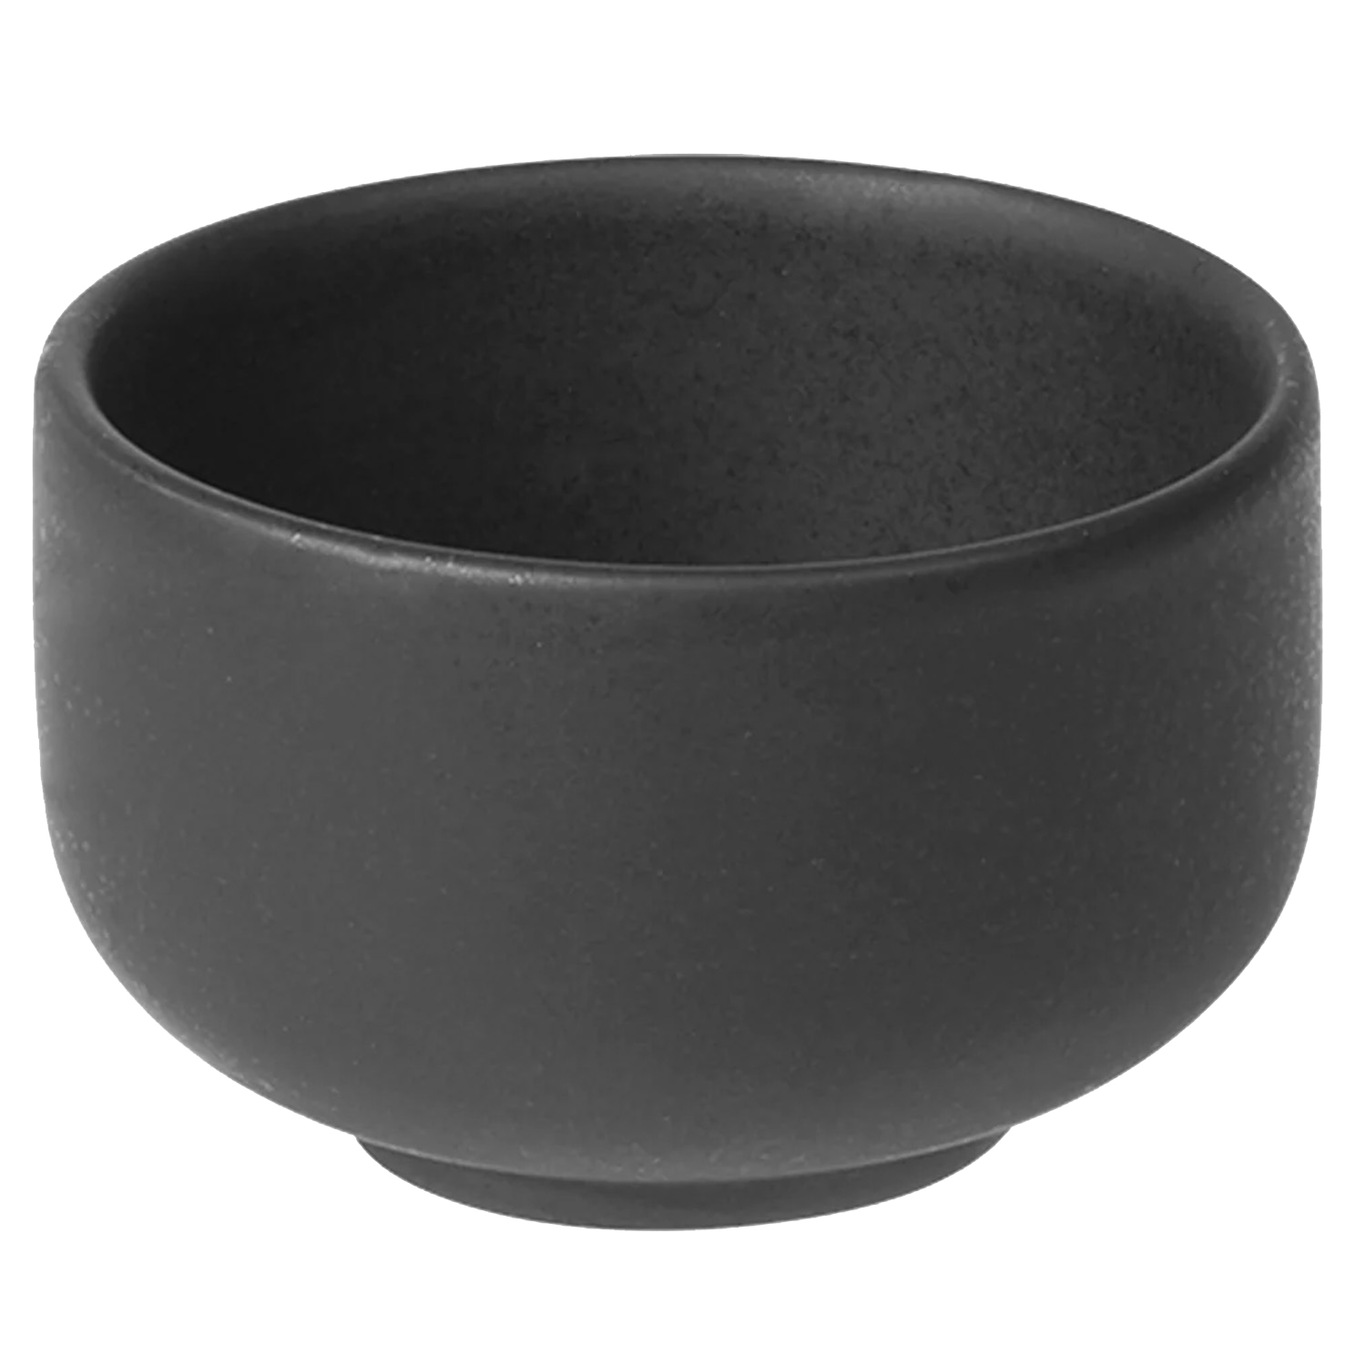 Ceramic Pisu Kulho Ø 9.3 cm, Ink Black